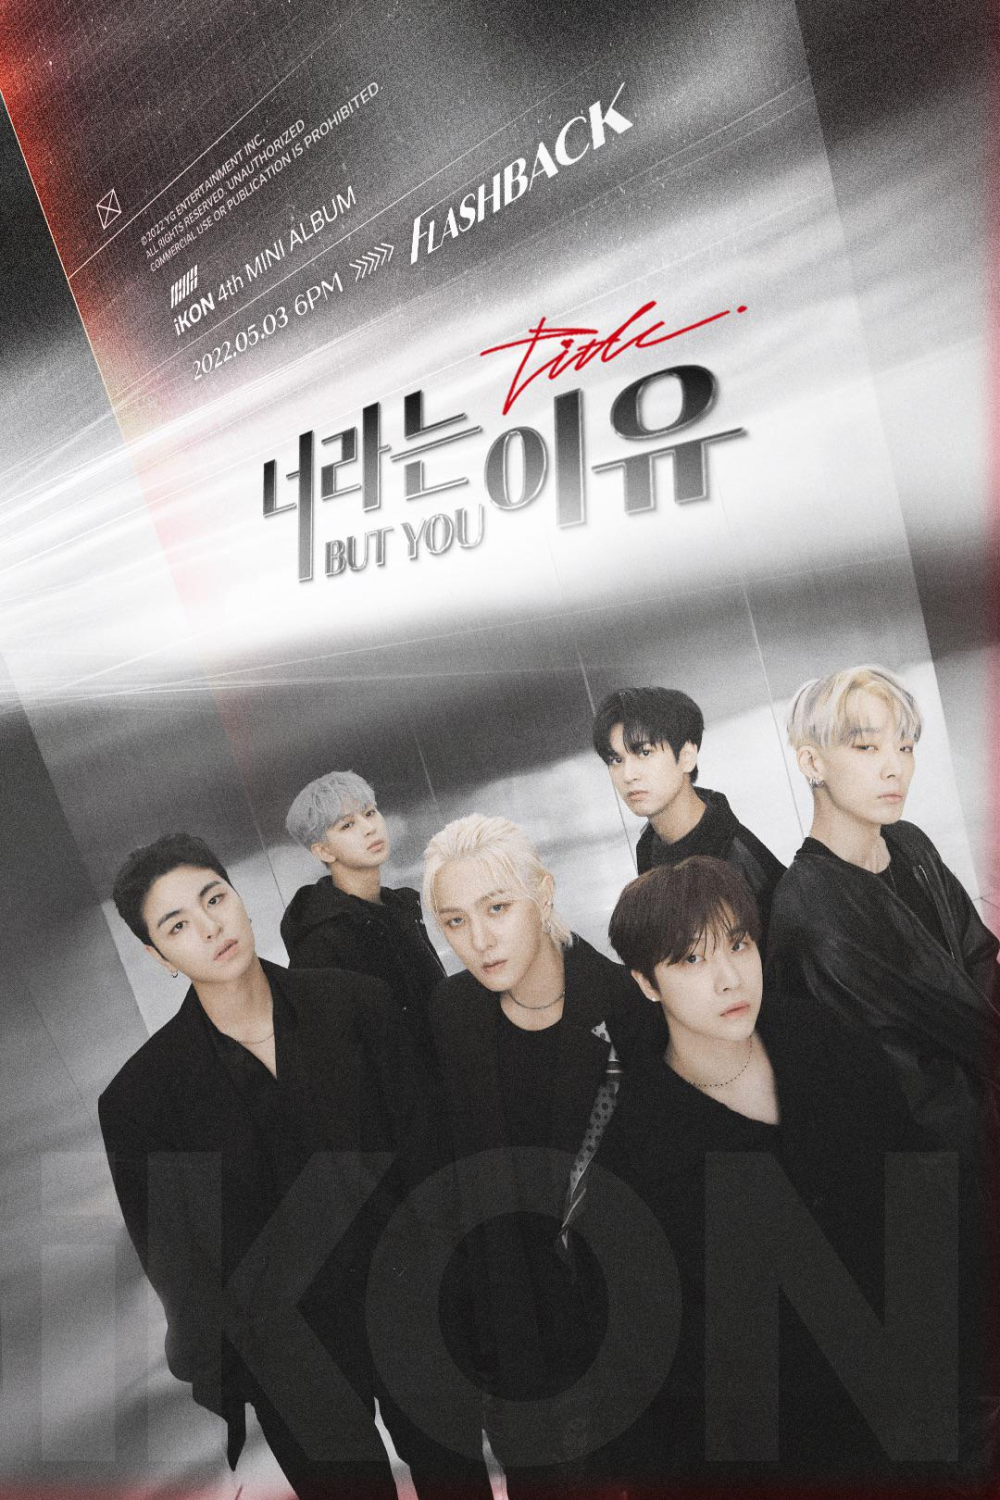 [Камбэк] iKON мини-альбом "Flashback ": музыкальный клип "But You"